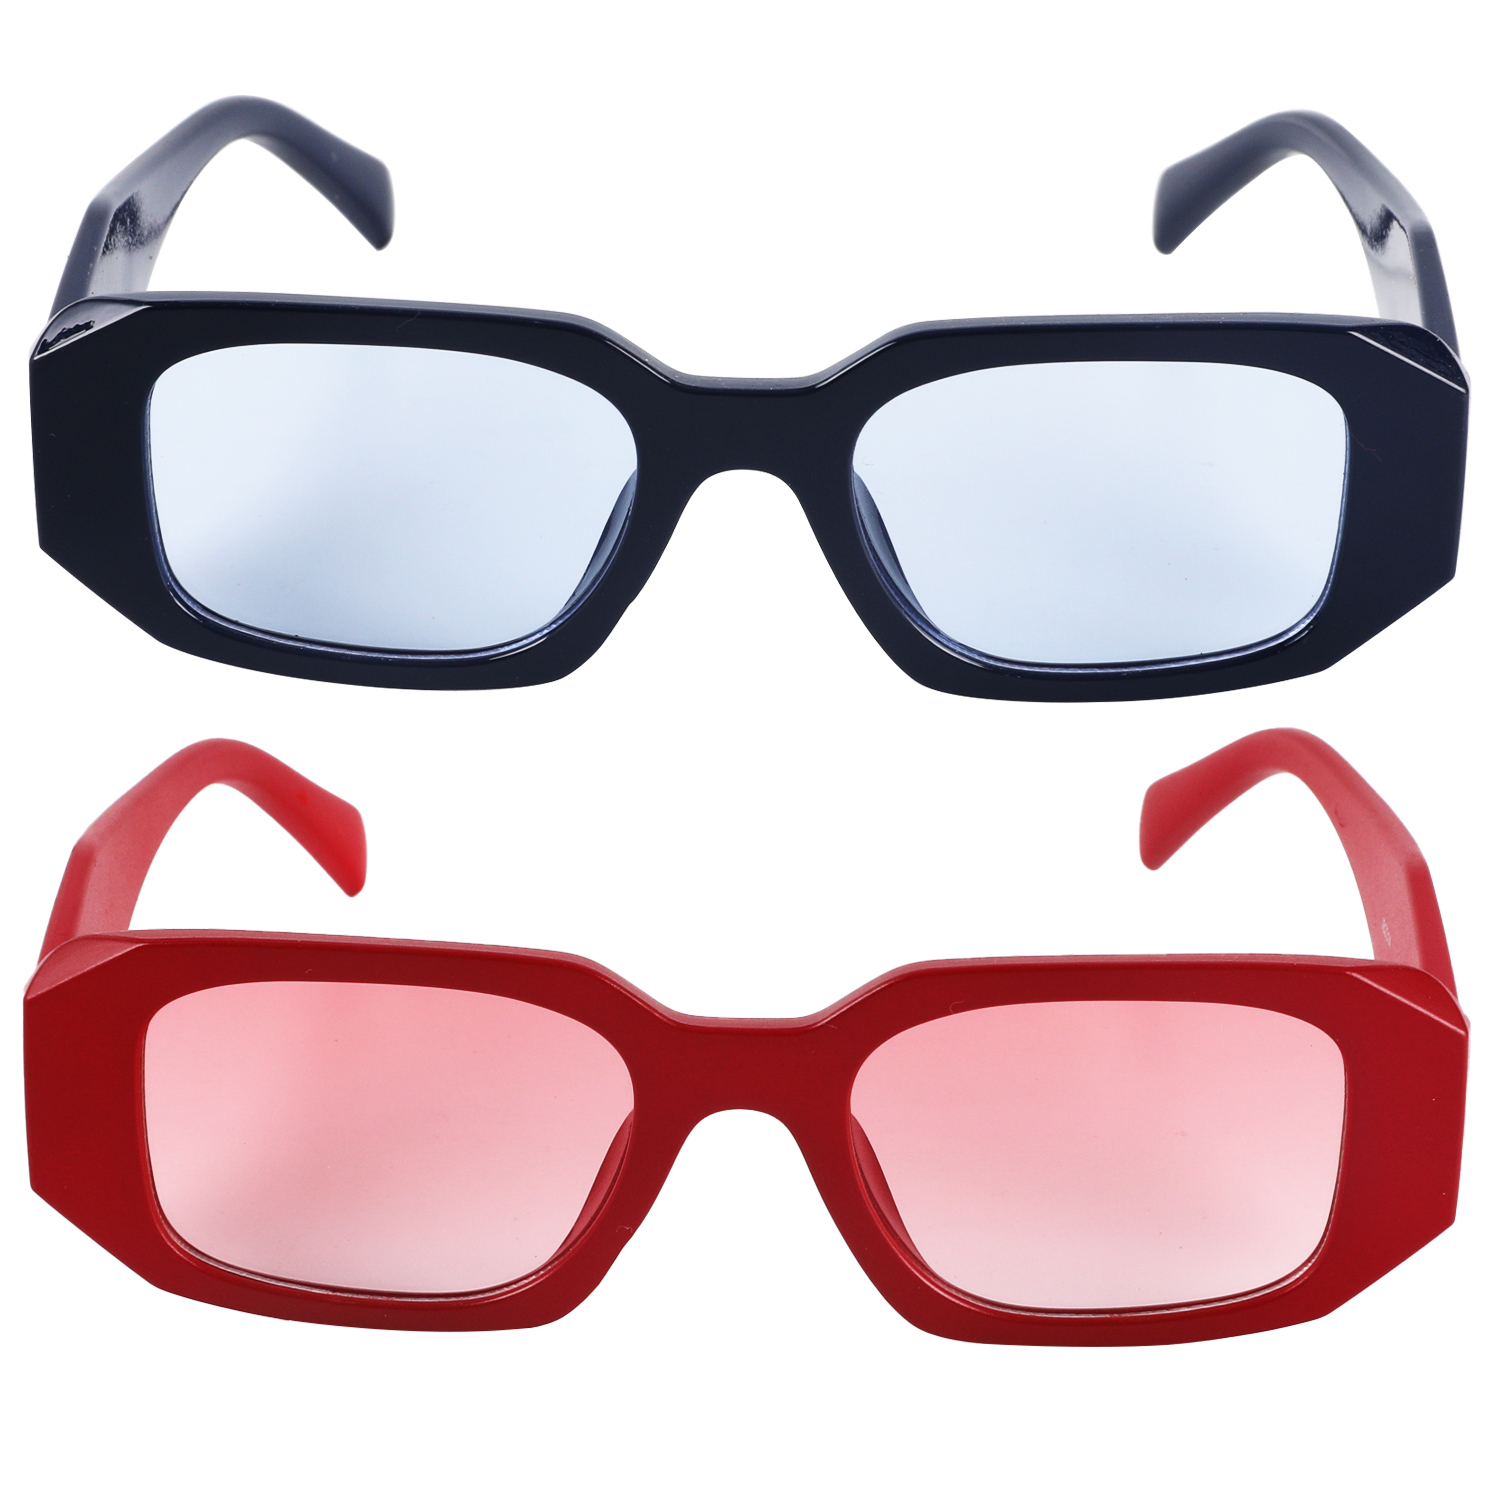 2023年新款时尚太阳眼镜 订制 礼品促销 防紫外线太阳眼镜JB2314详情2